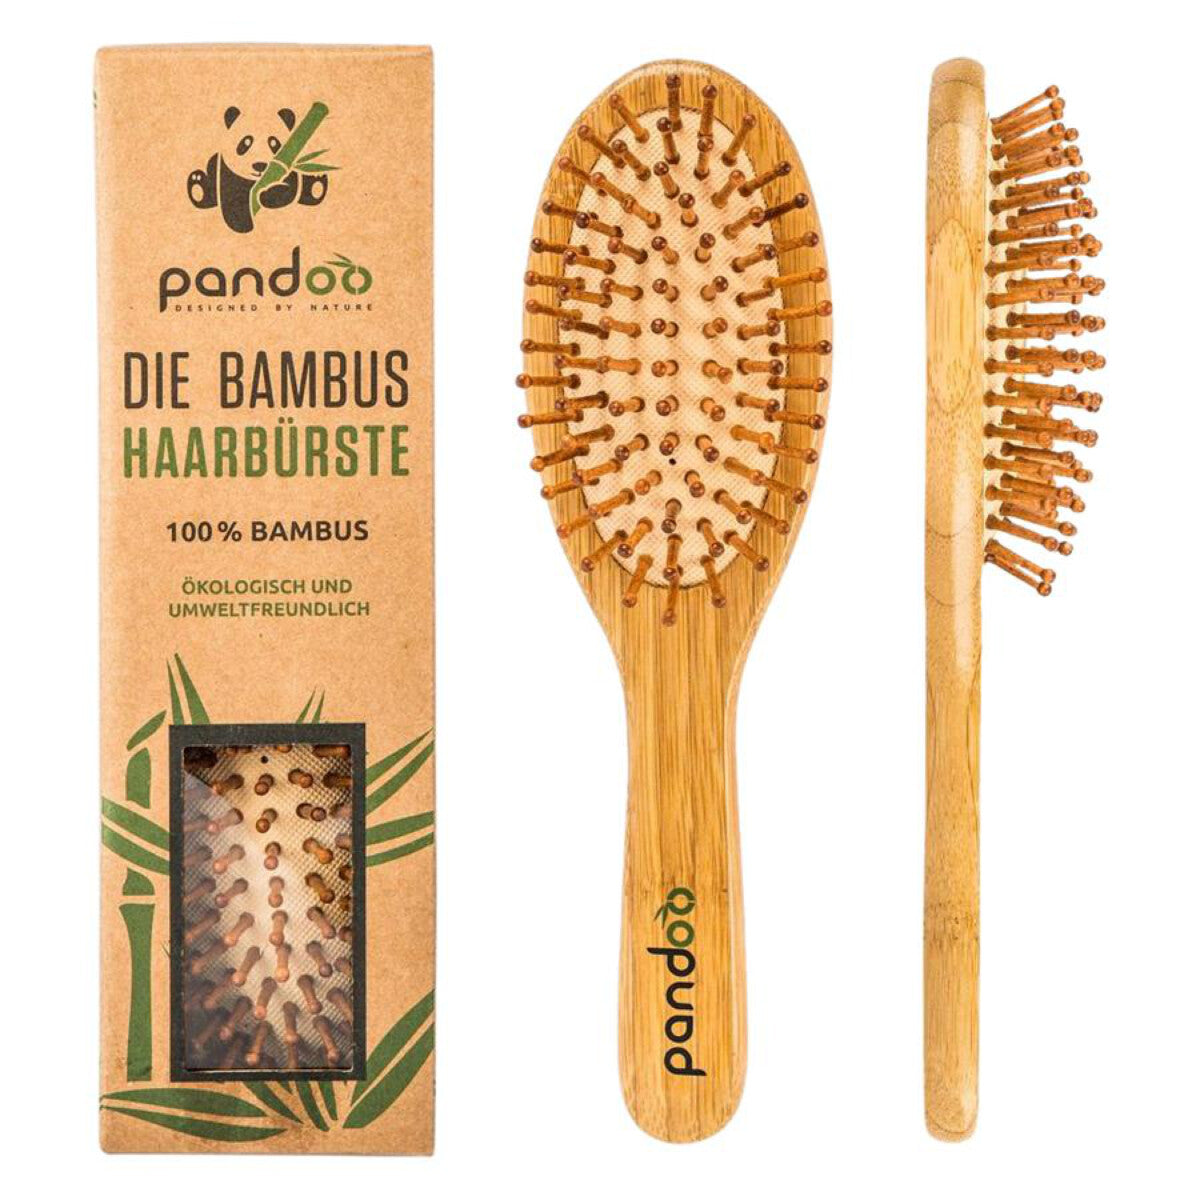 PANDOO Bambus Haarbürste - 1 Stk.